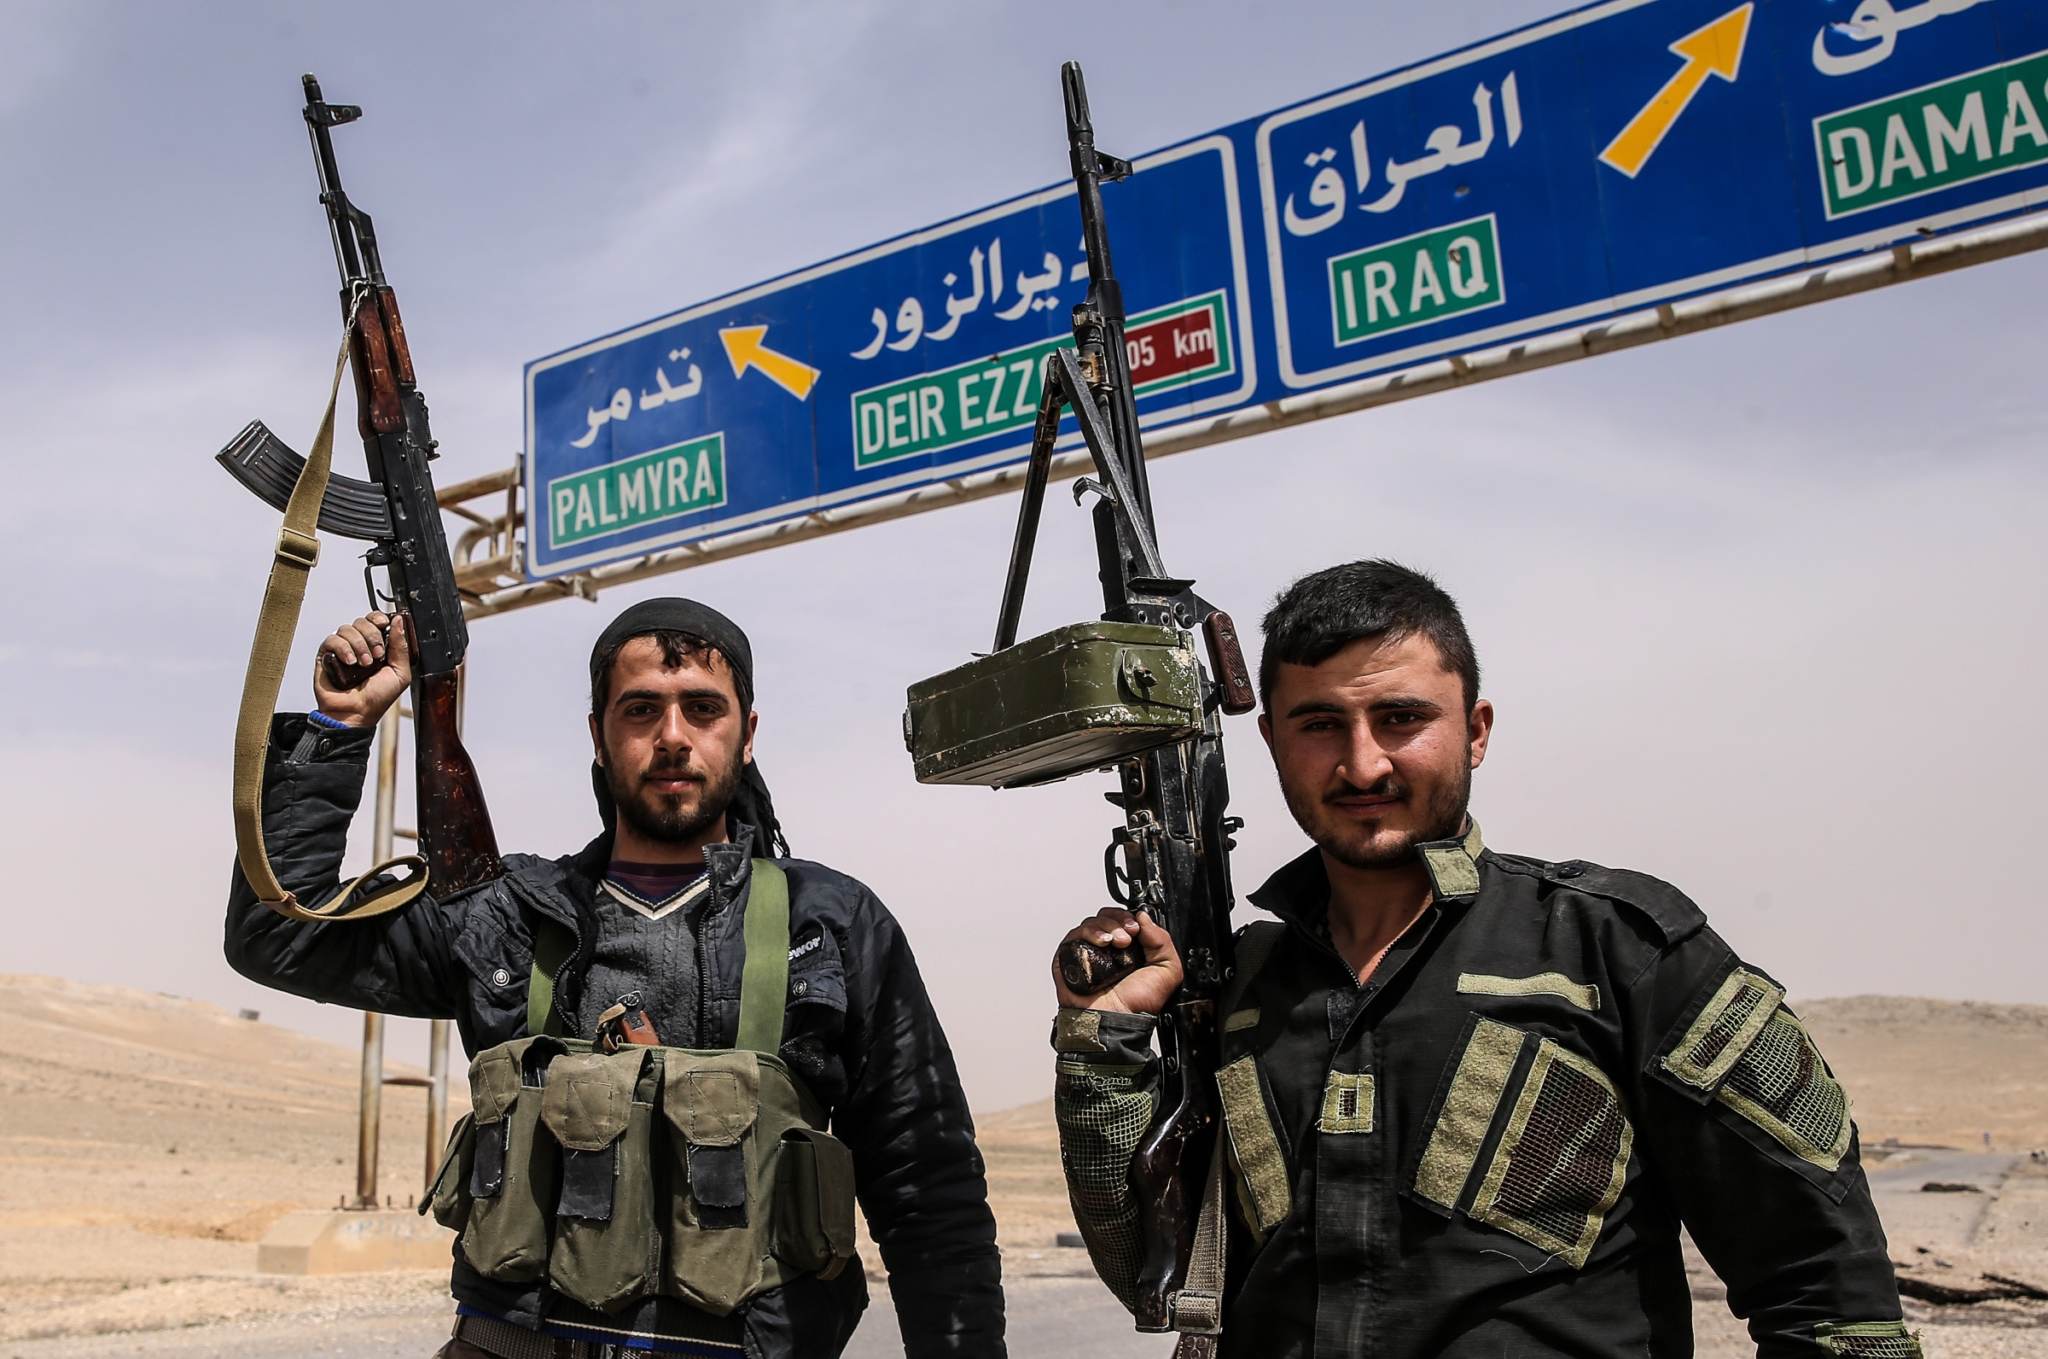 Игил харасан. Террористическая группировка «Исламское государство» в Сирии. Сирия Пальмира боевики ИГИЛ. Пальмира ИГИЛ И сирийские войска. Террористы ближнего Востока.